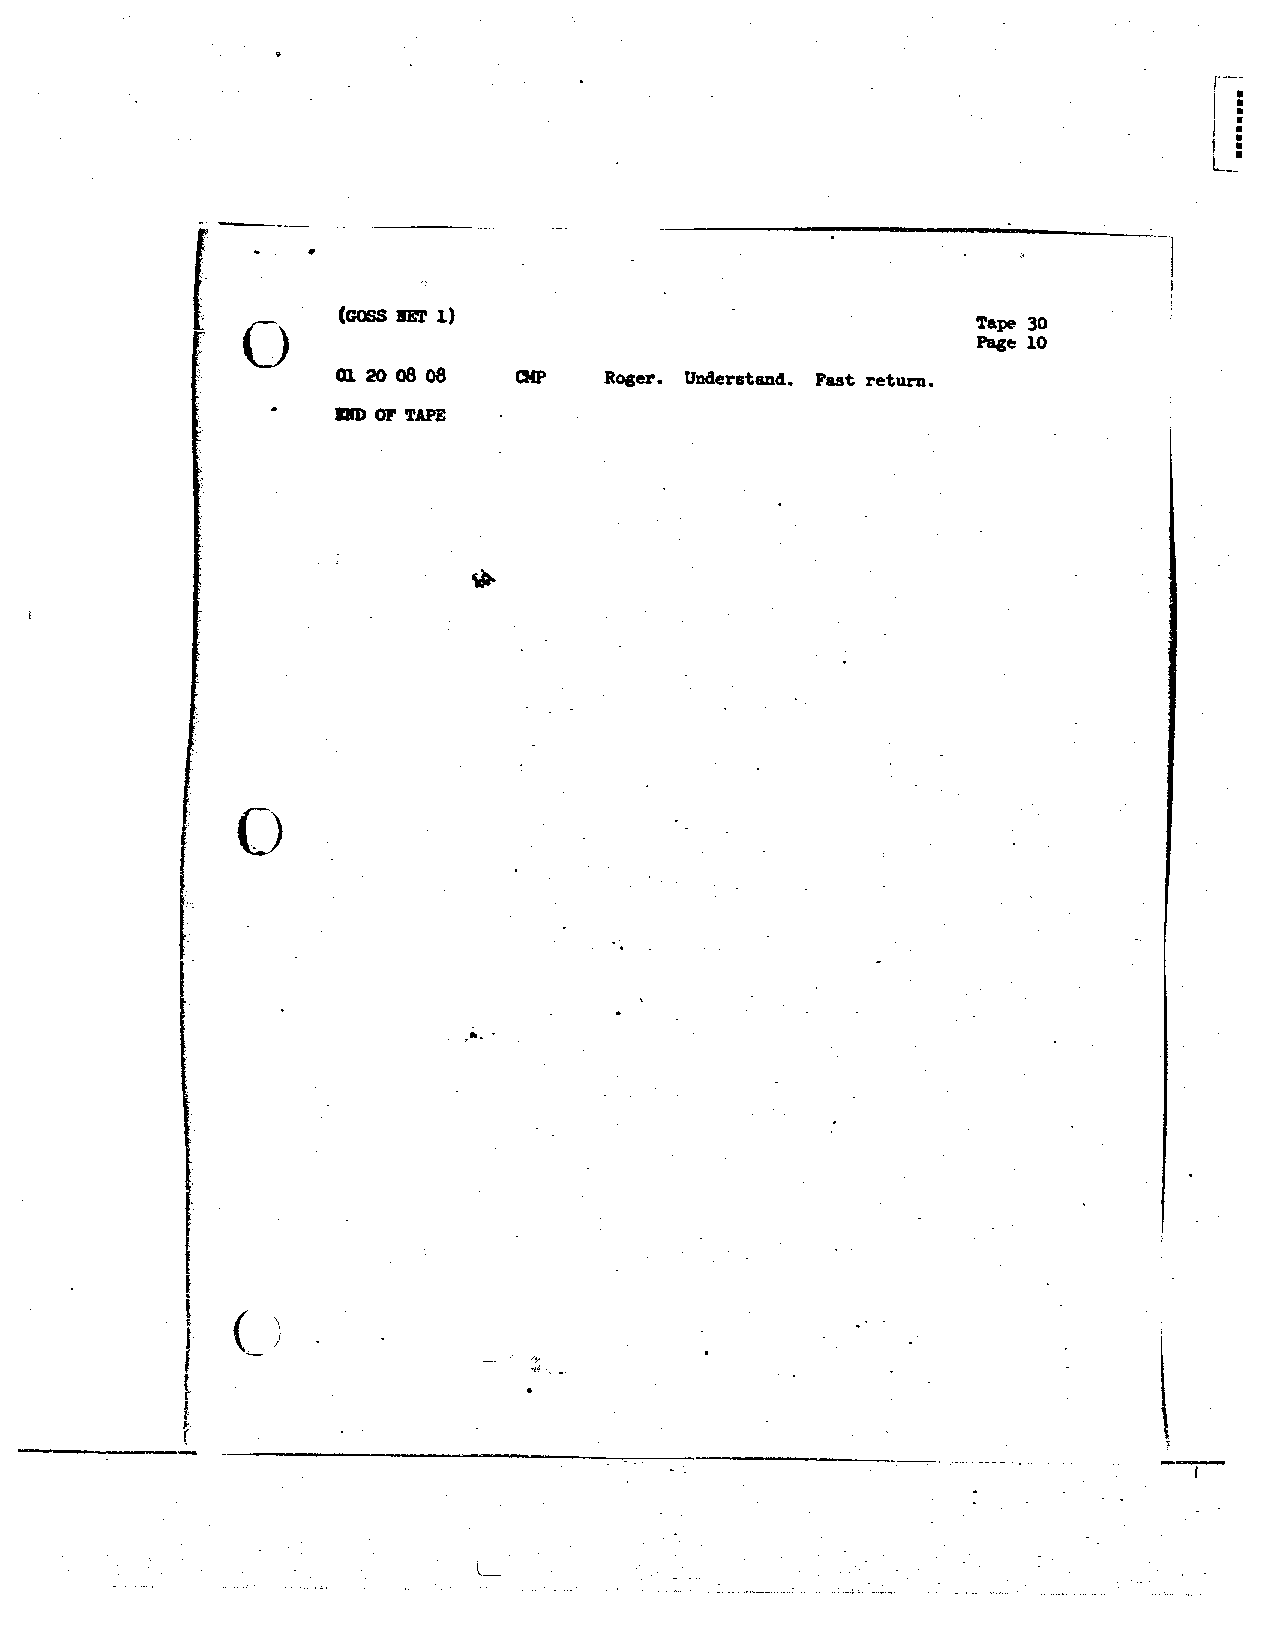 Page 239 of Apollo 8’s original transcript